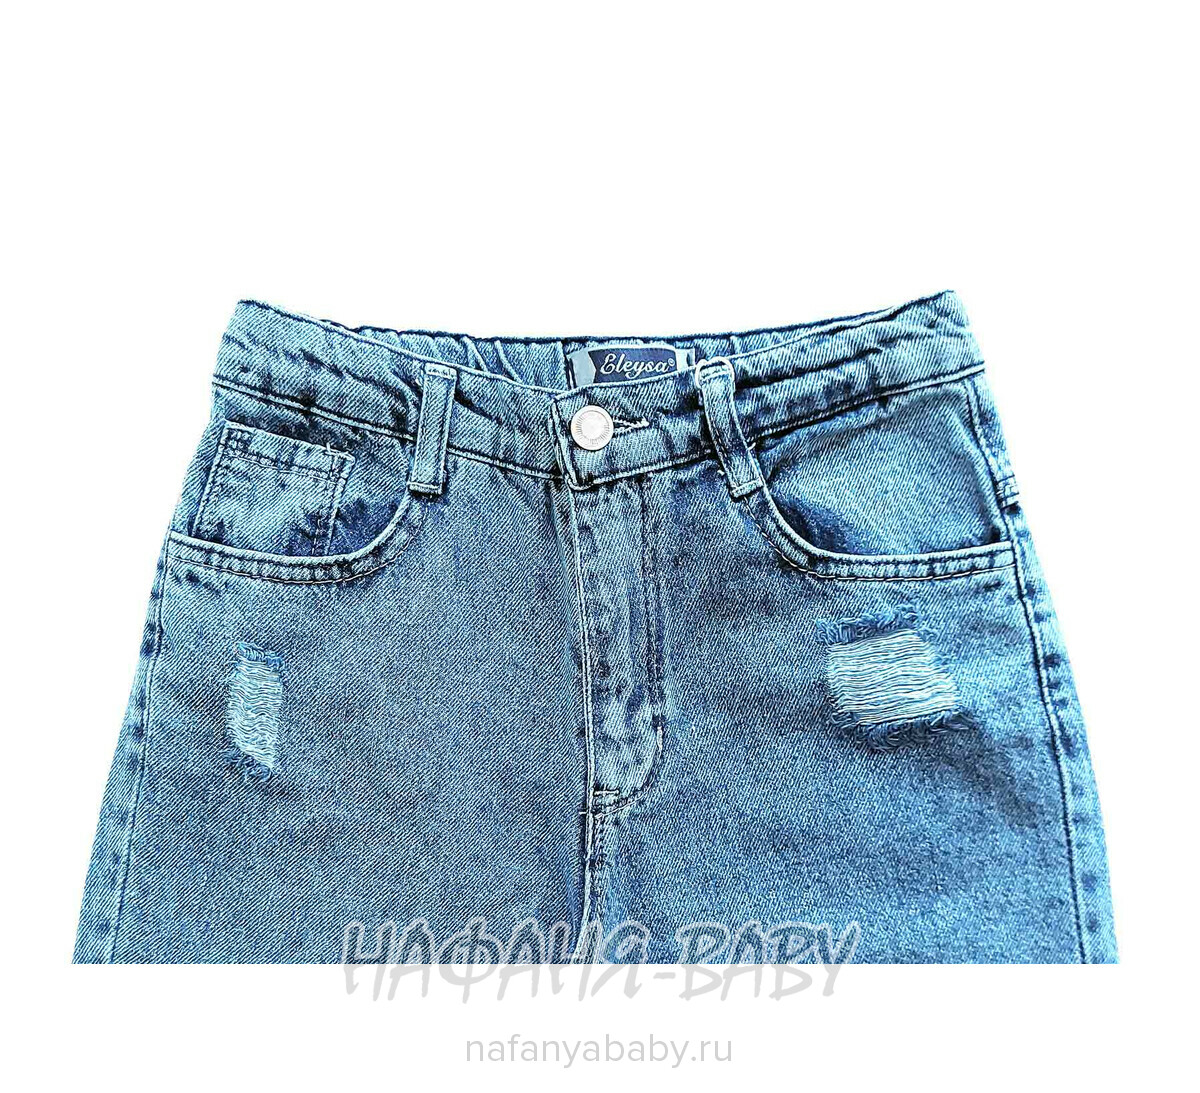 Джинсы ELEYSA Jeans арт: 65822 для девочки 13-16 лет, цвет синий, оптом Турция